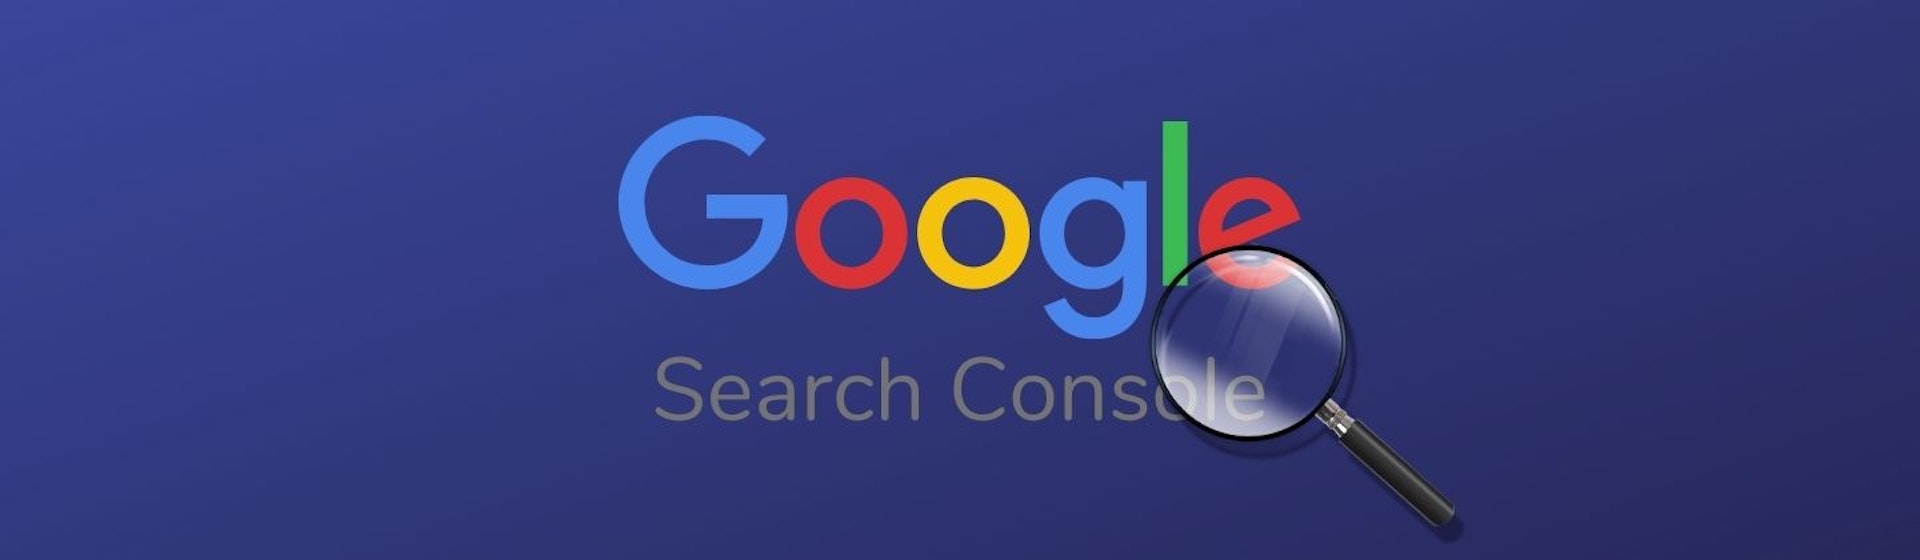 ¿Qué es Google Search Console? Eleva tu estrategia SEO con esta herramienta